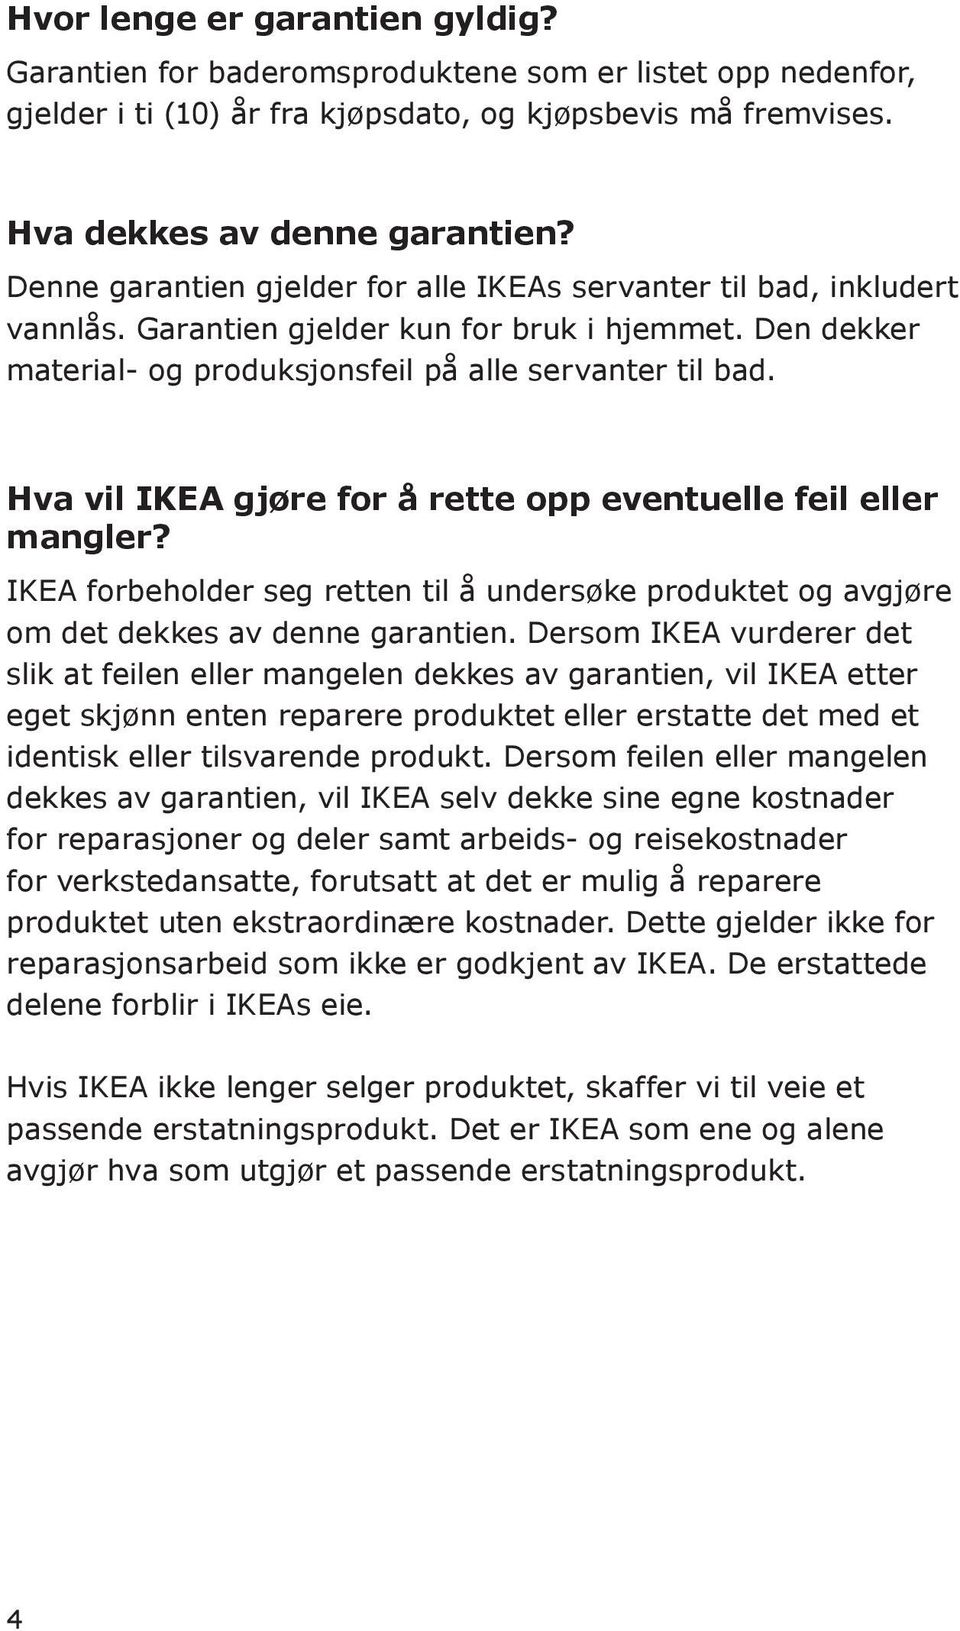 Hva vil IKEA gjøre for å rette opp eventuelle feil eller mangler? IKEA forbeholder seg retten til å undersøke produktet og avgjøre om det dekkes av denne garantien.